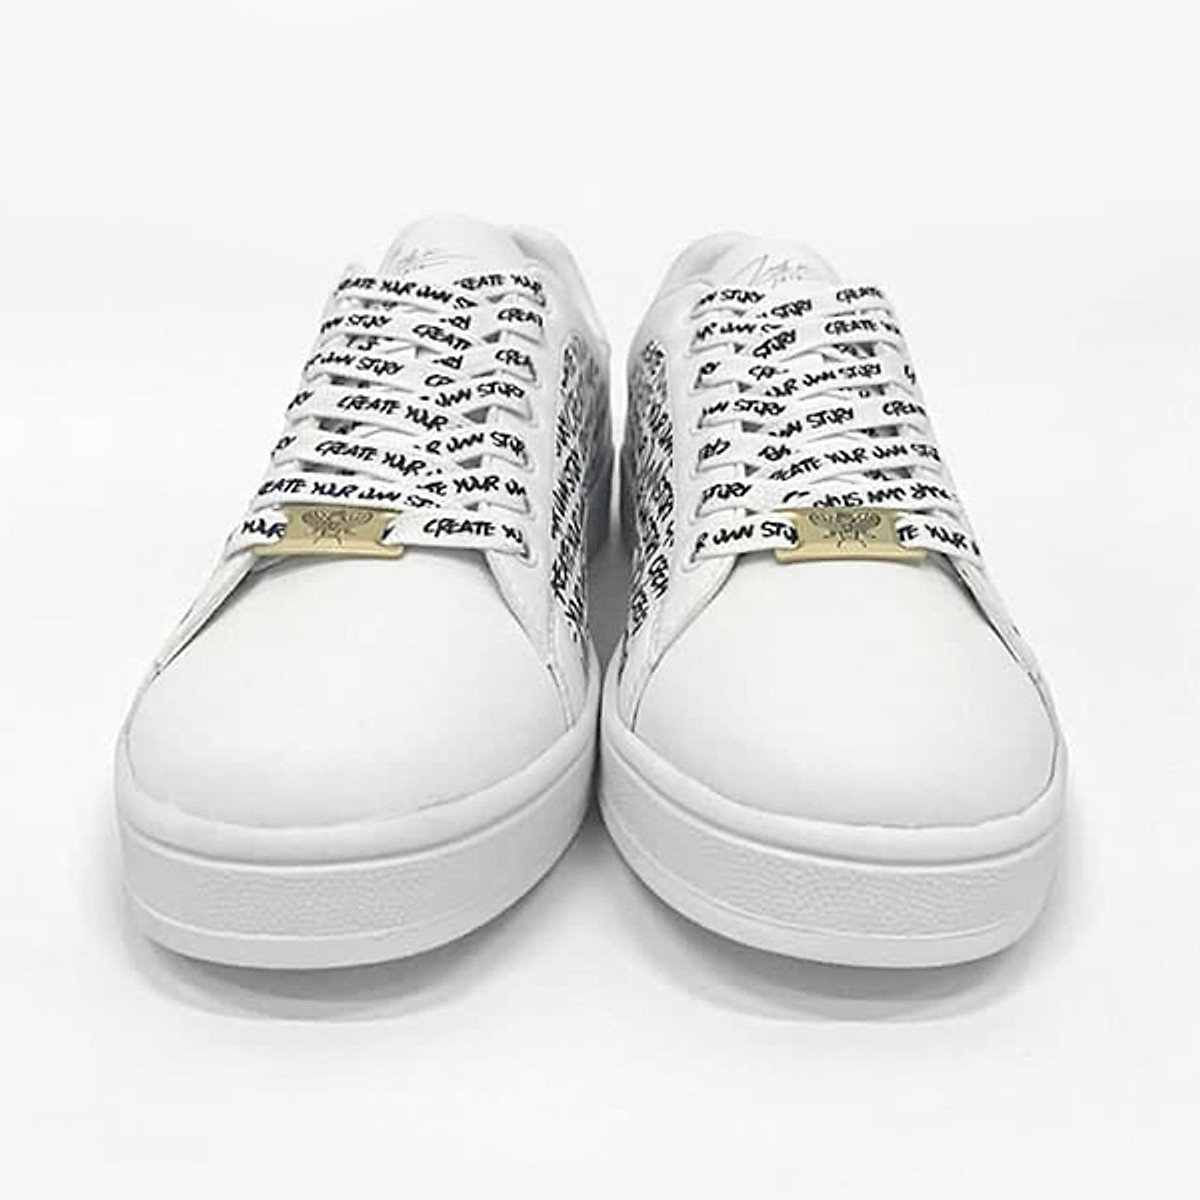 Săn Sale Đom Đóm Sneaker Collection - Limited Edition Hot Xịn Xò